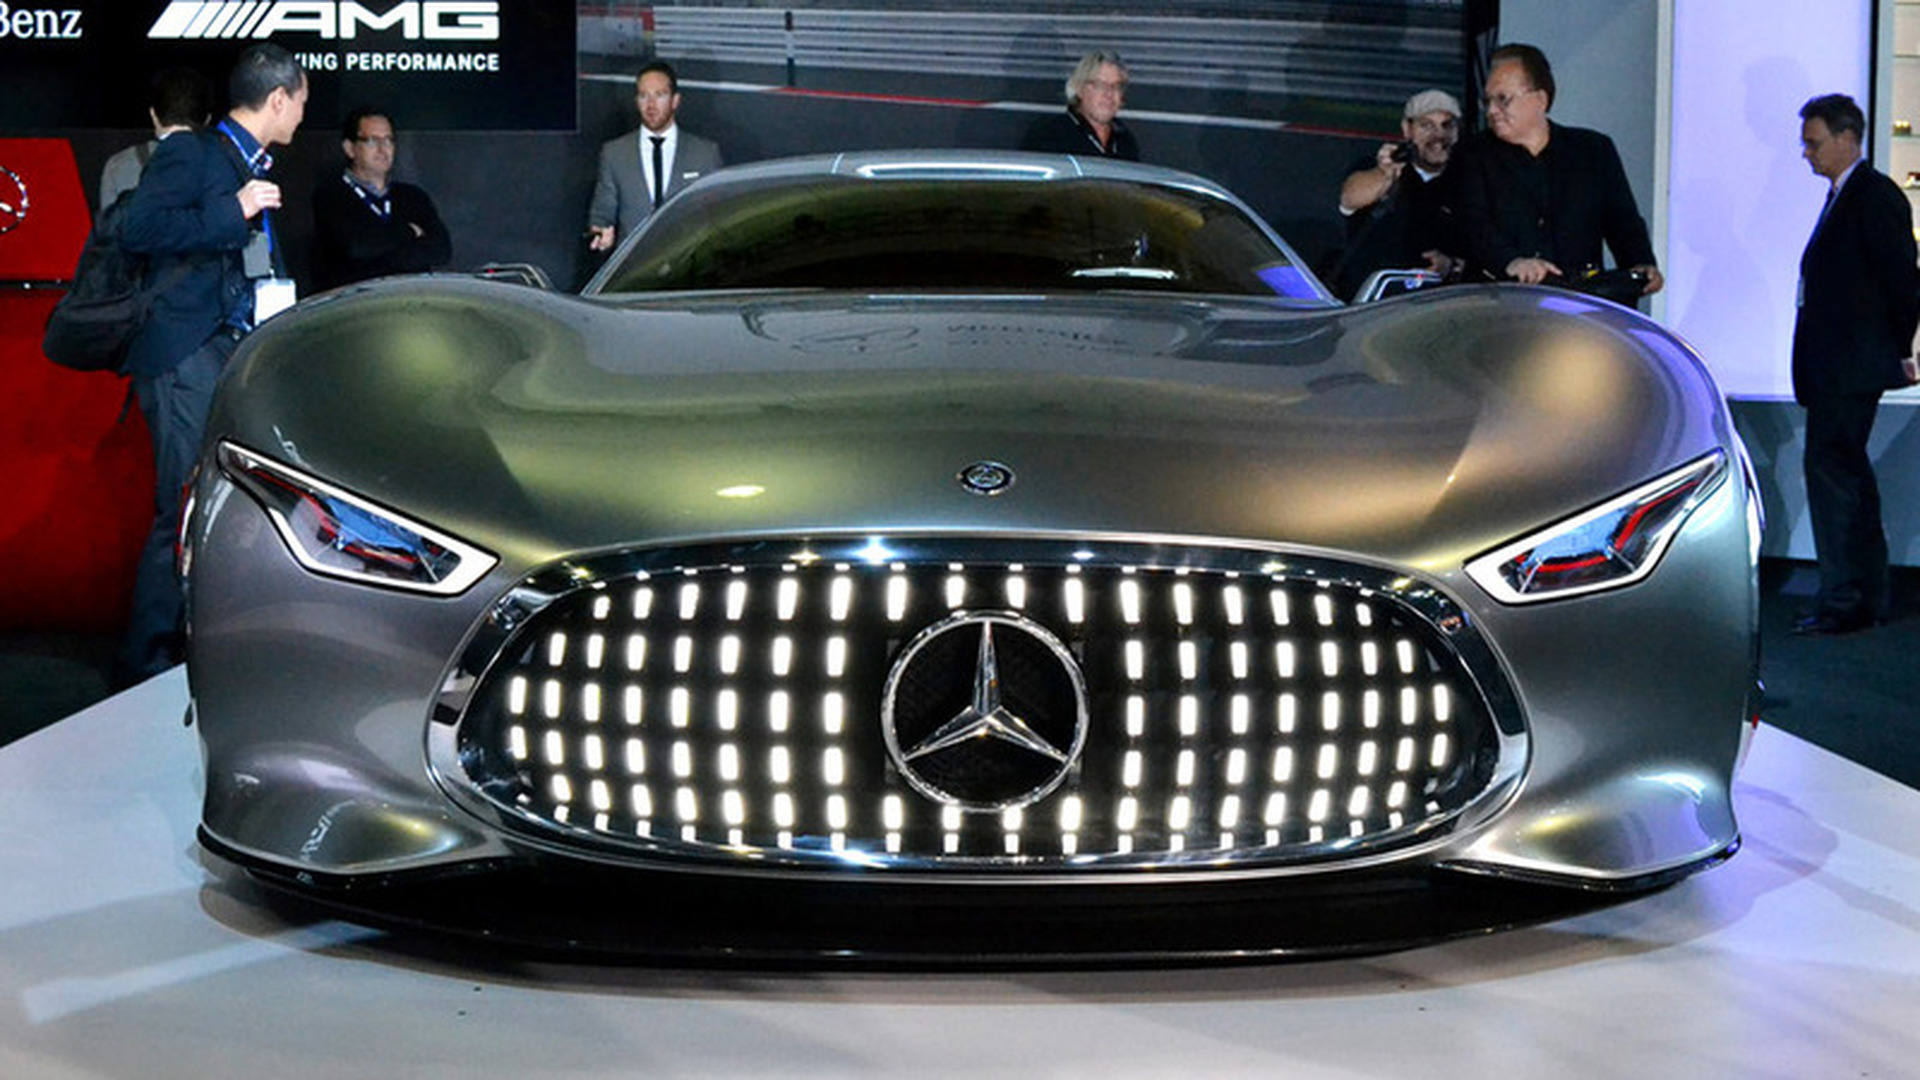 Mercedes AMG Vision gt